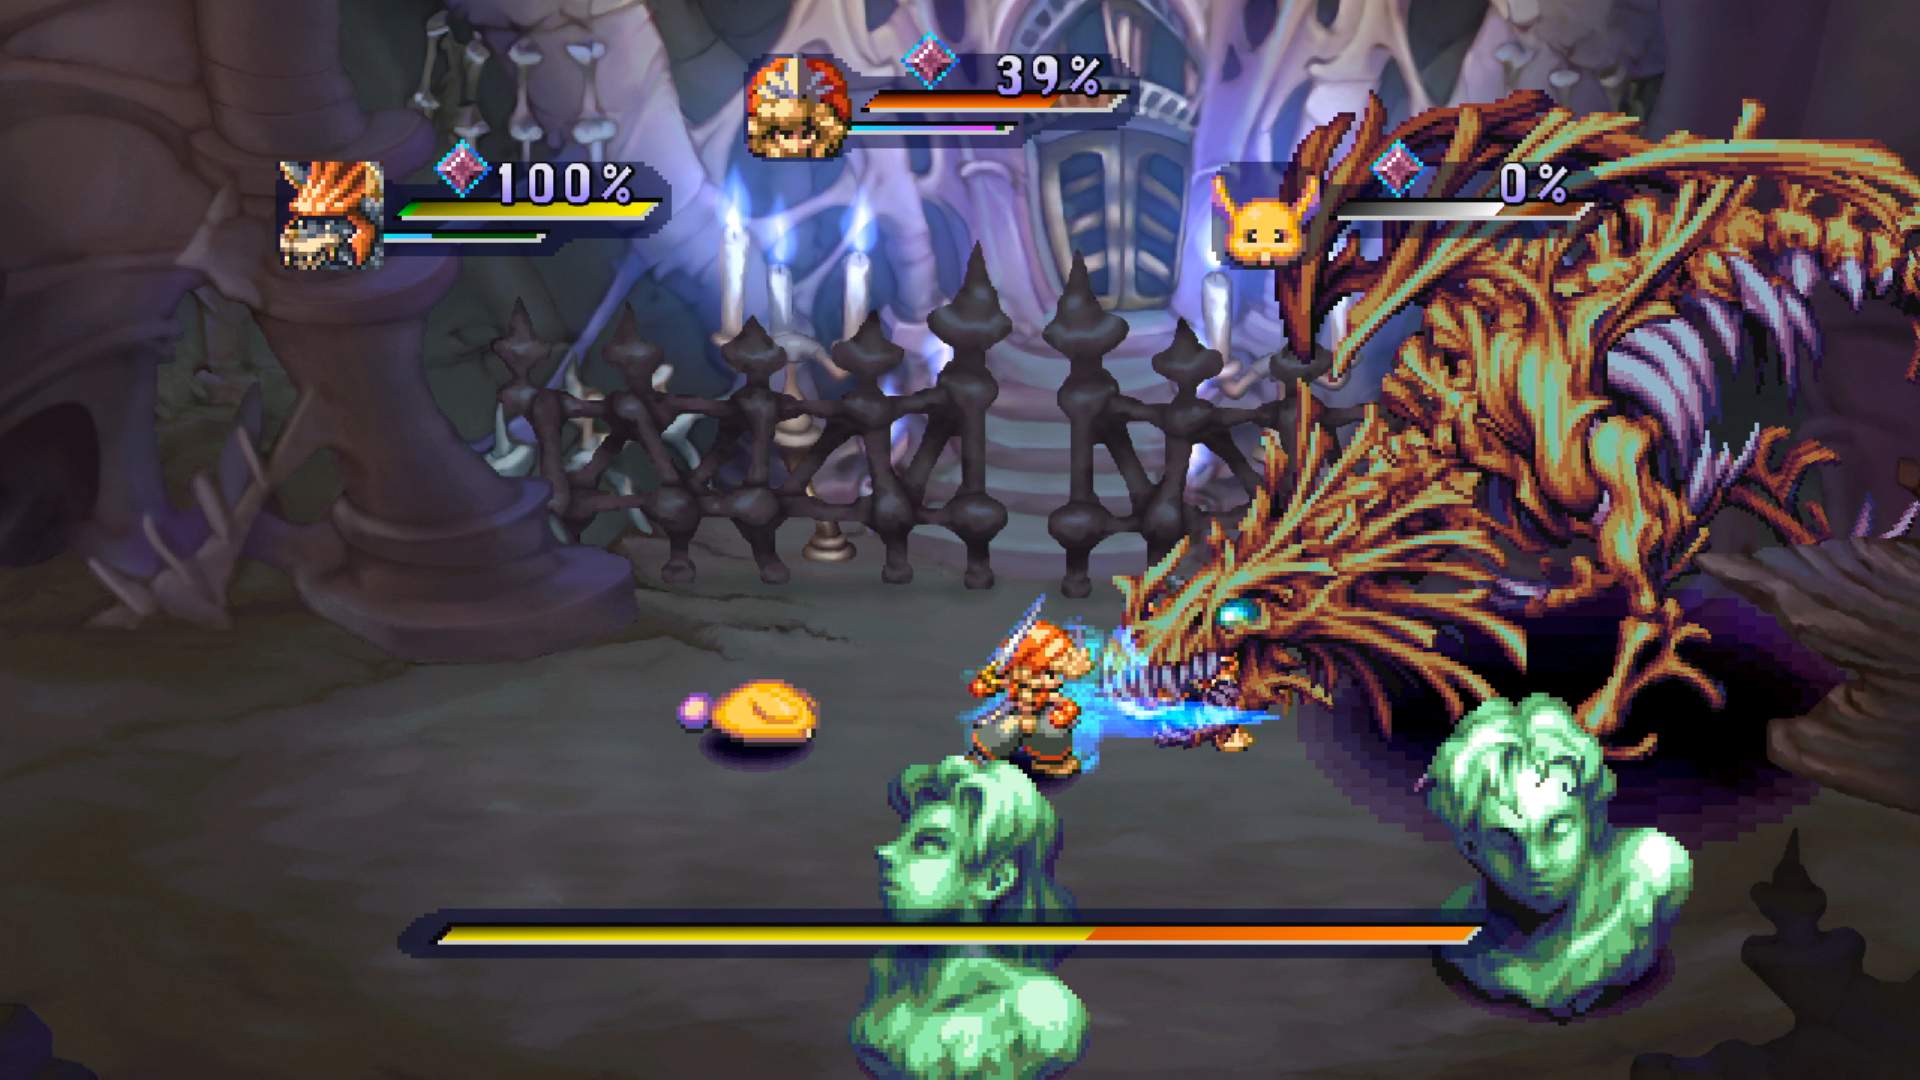 Der Ingame-Kampfbildschirm von Legend of Mana. Die Gruppe stellt sich in einem Dungeon einem großen Monster.